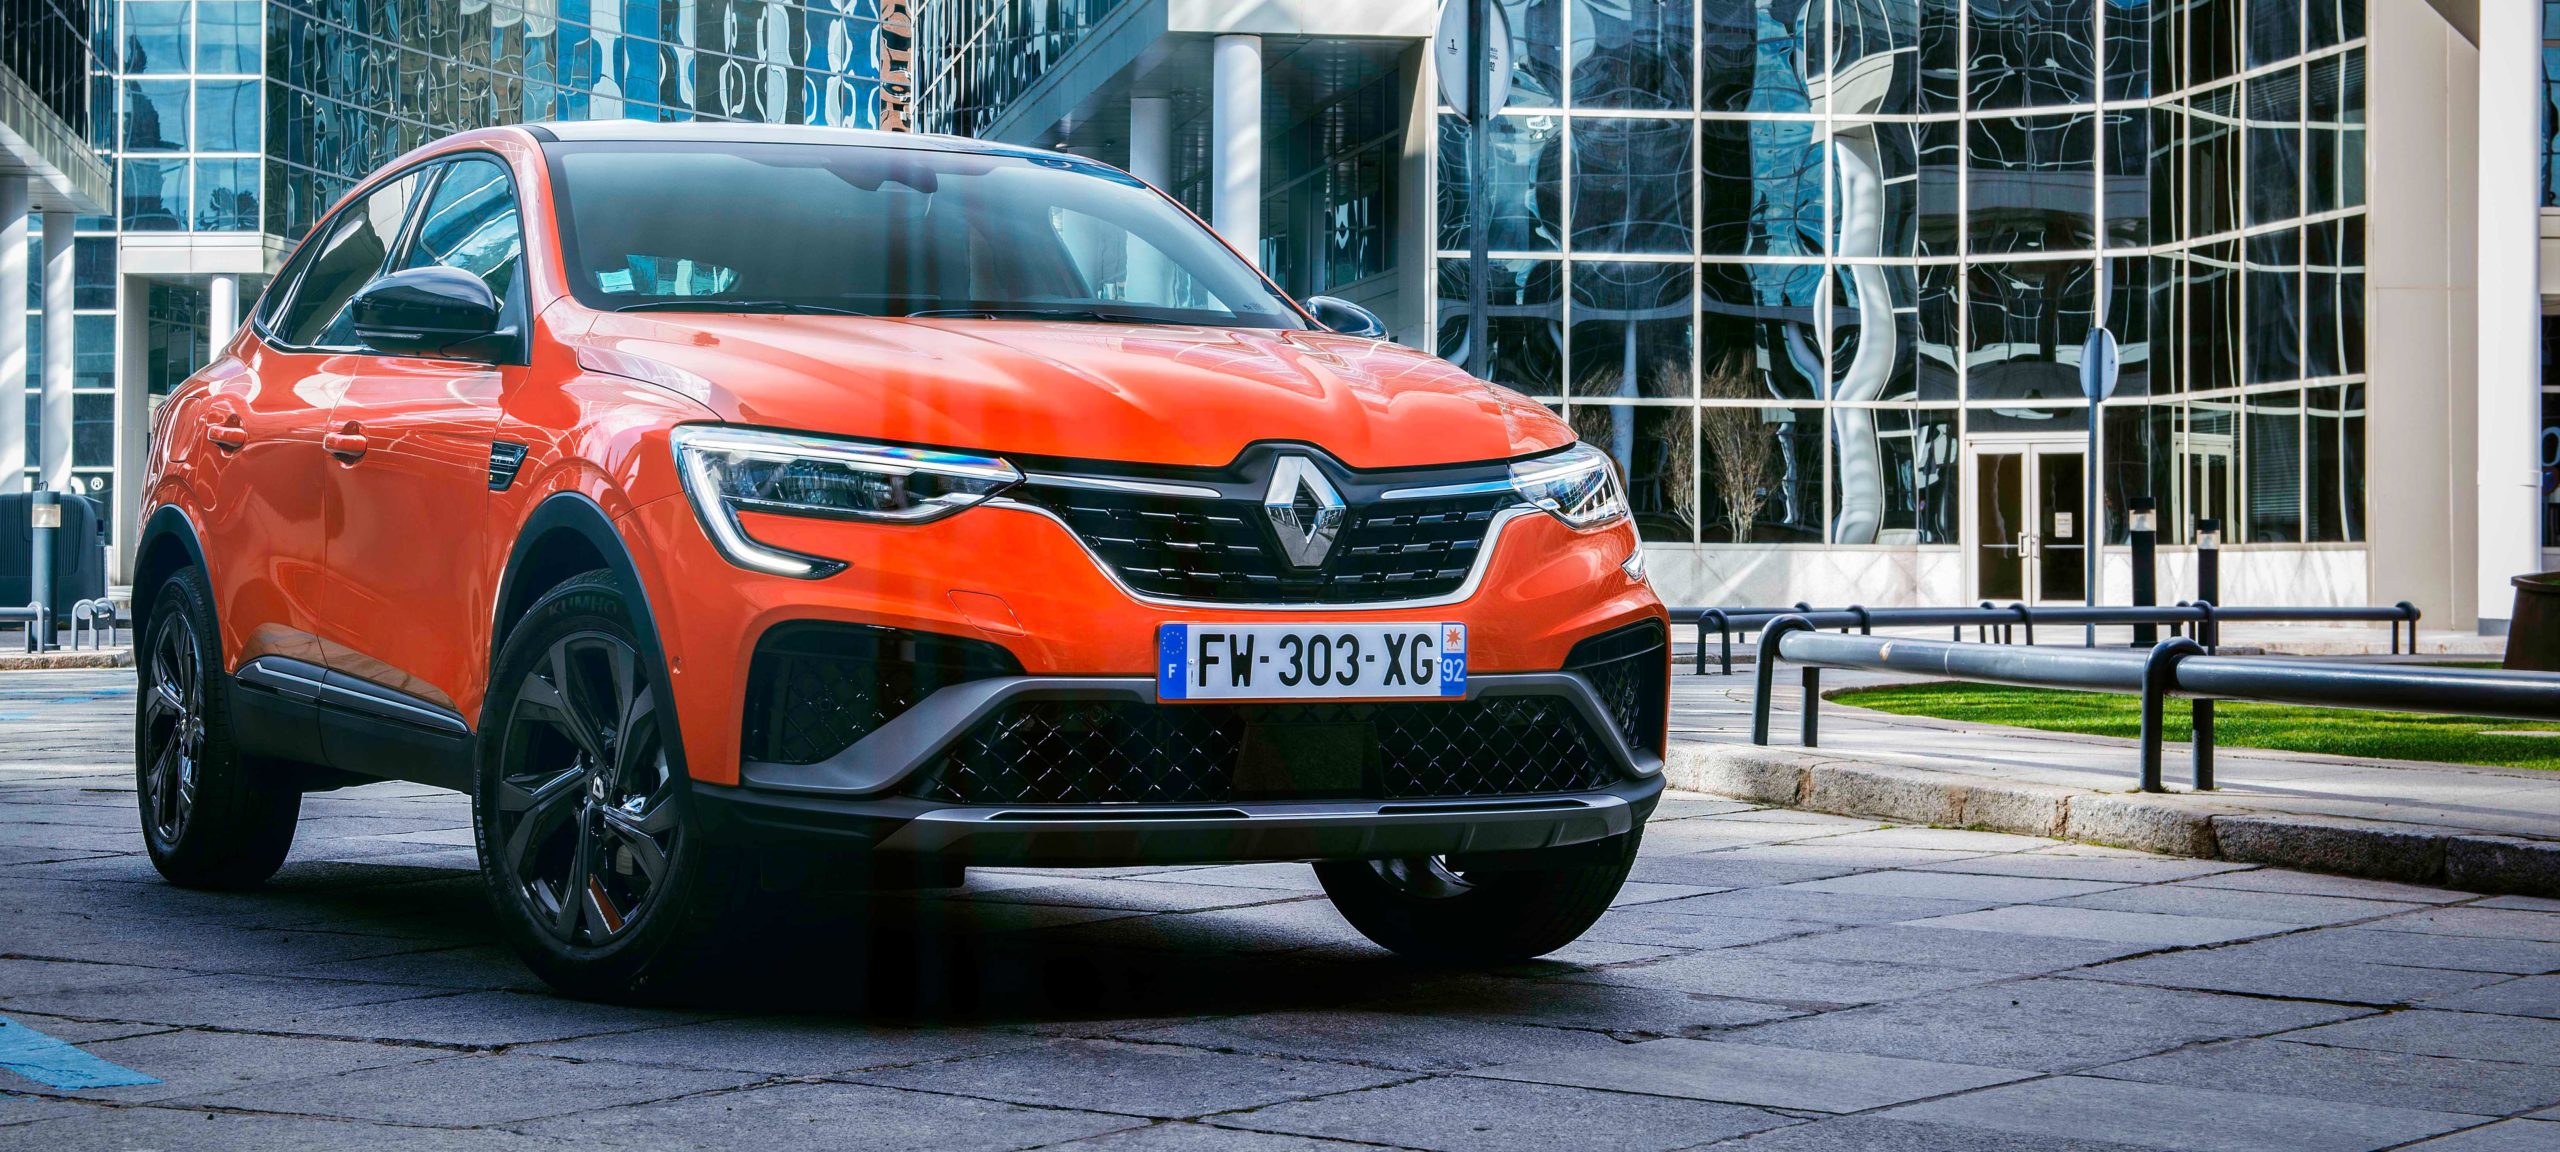 Renault Arkana lanzamiento en el mercado español